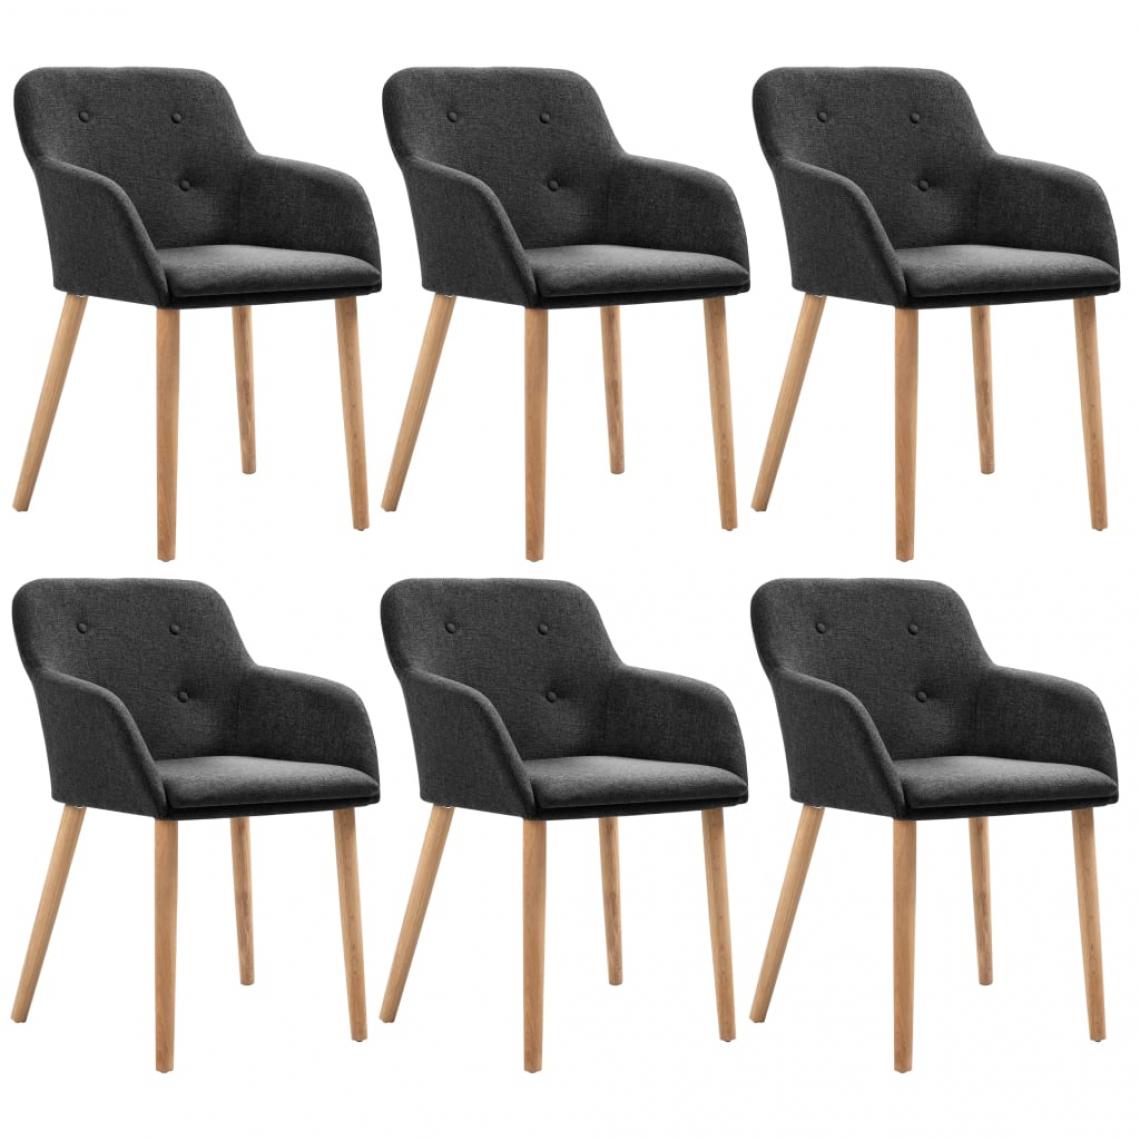 Decoshop26 - Lot de 6 chaises de salle à manger cuisines de salle à manger design moderne tissu gris foncé et chêne massif CDS022952 - Chaises